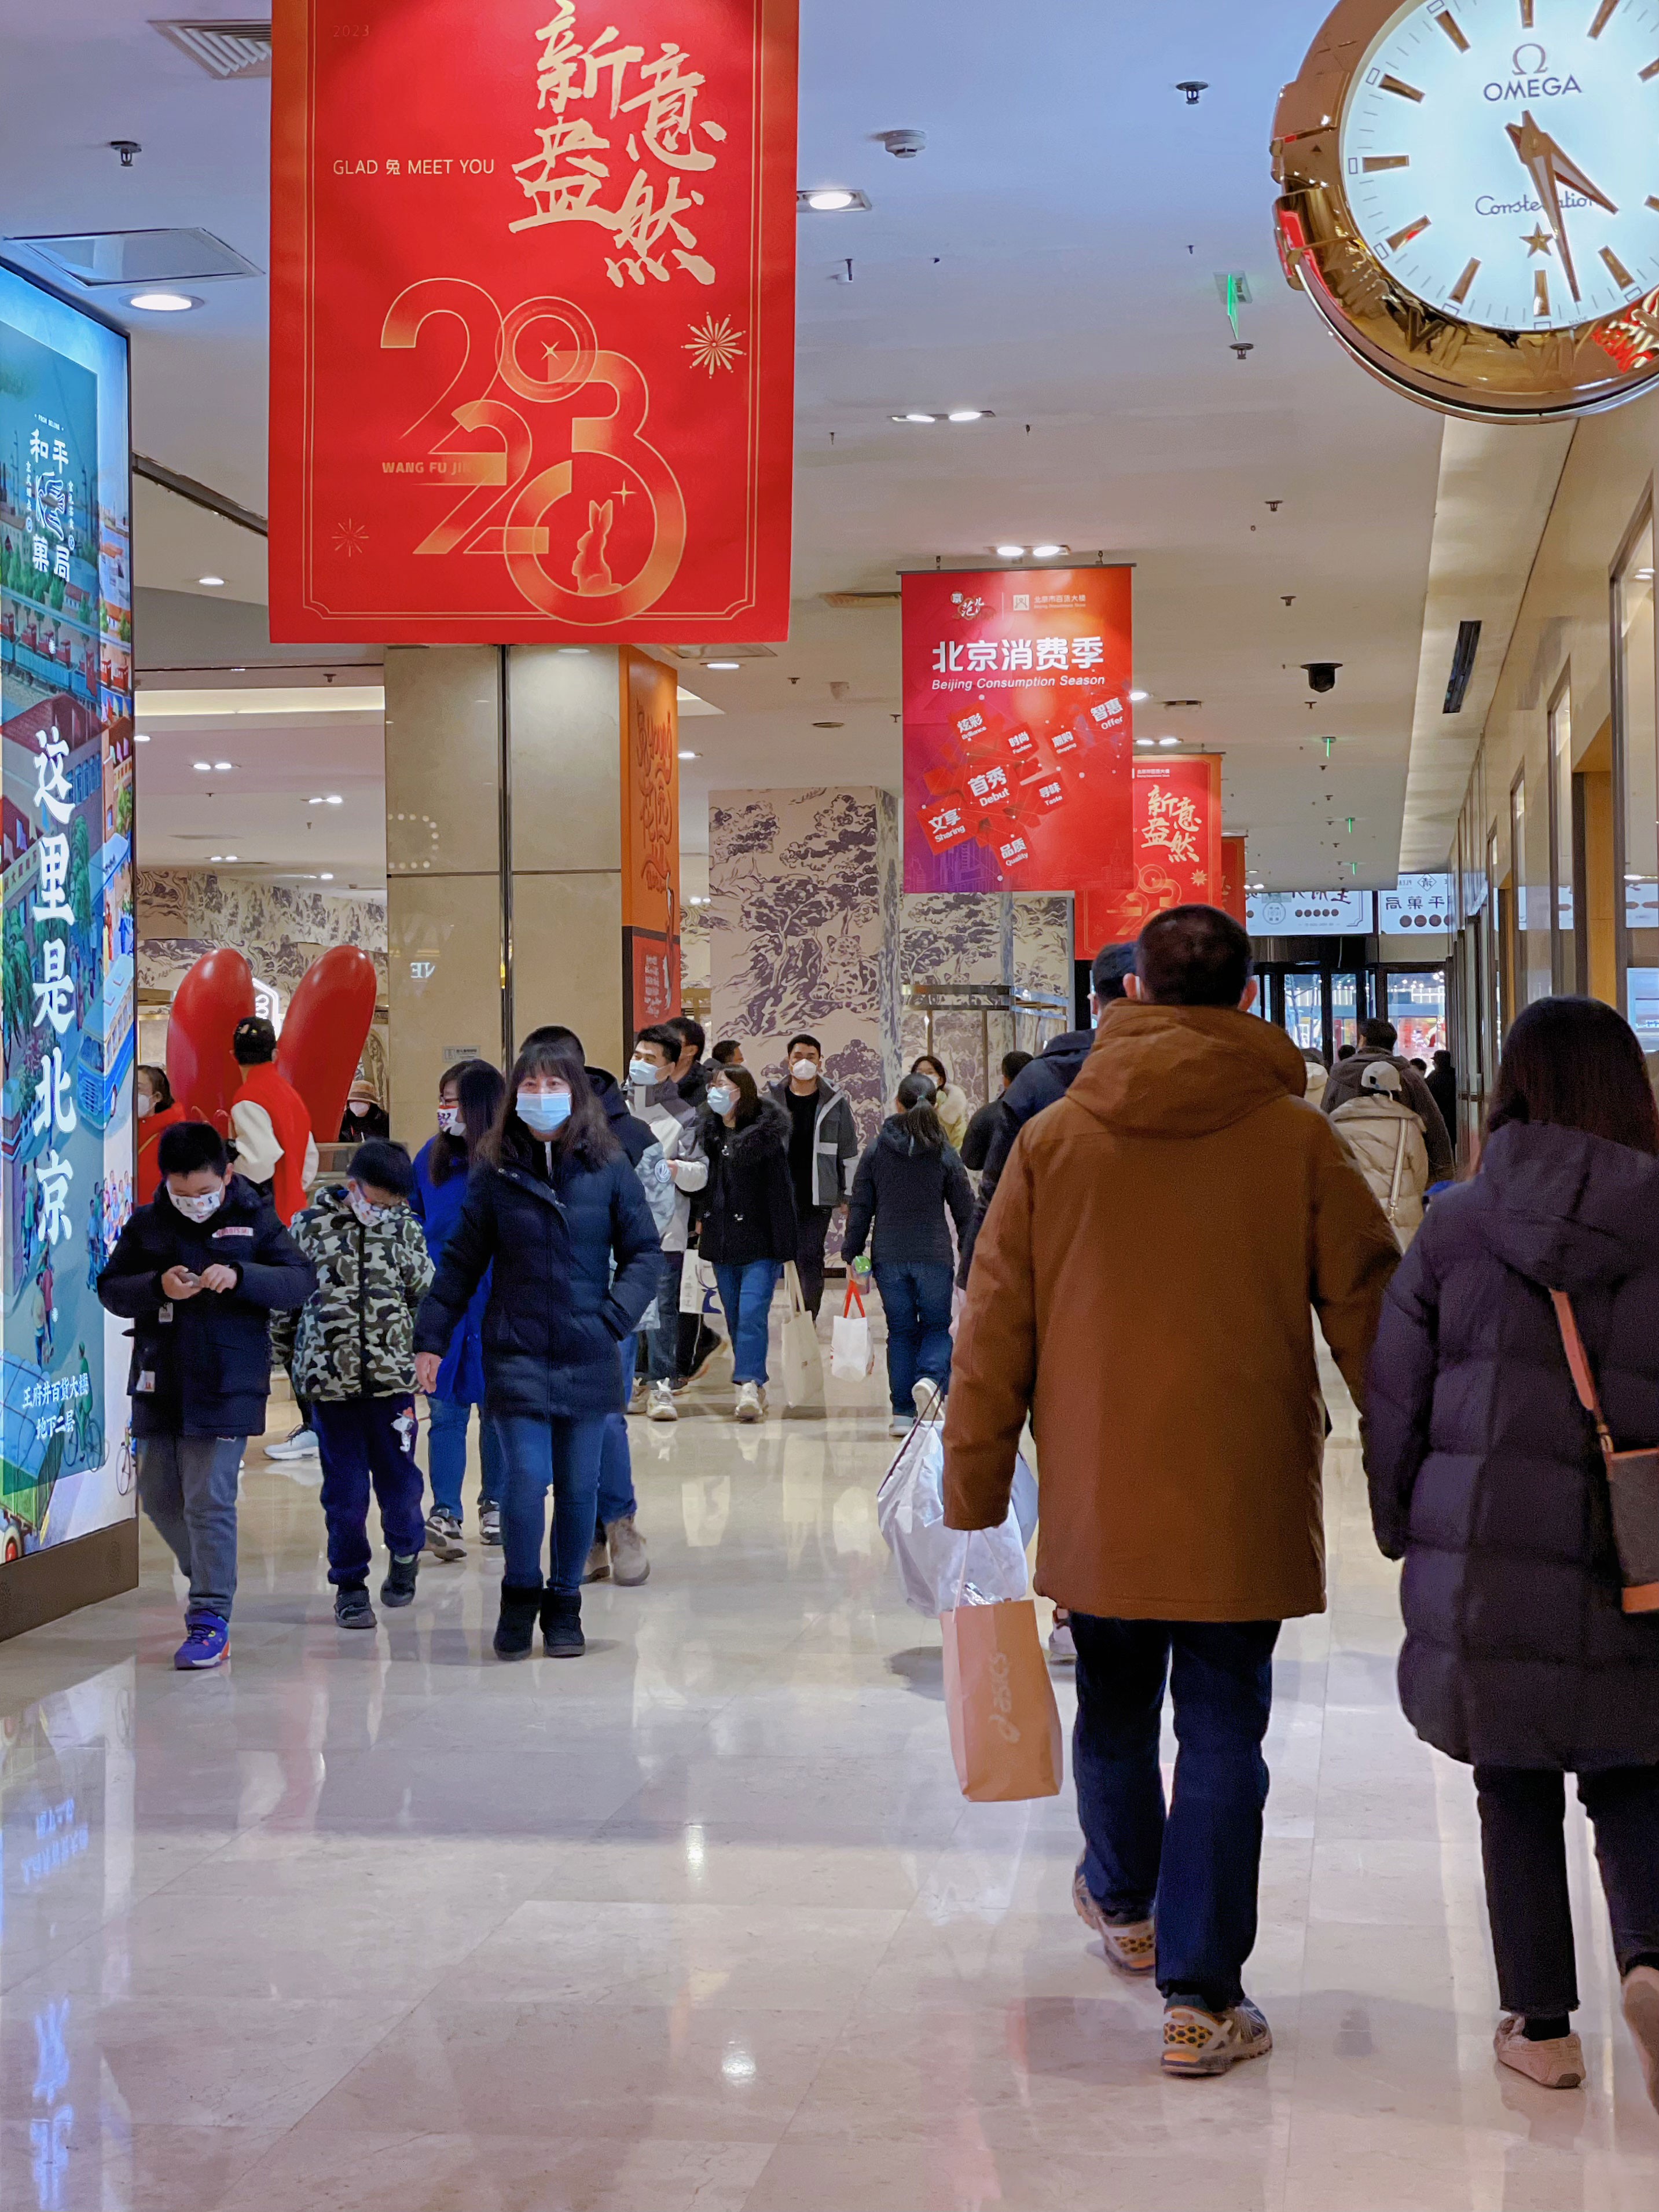 百货大楼开启新春促销 超大只网红兔吸引众多顾客打卡